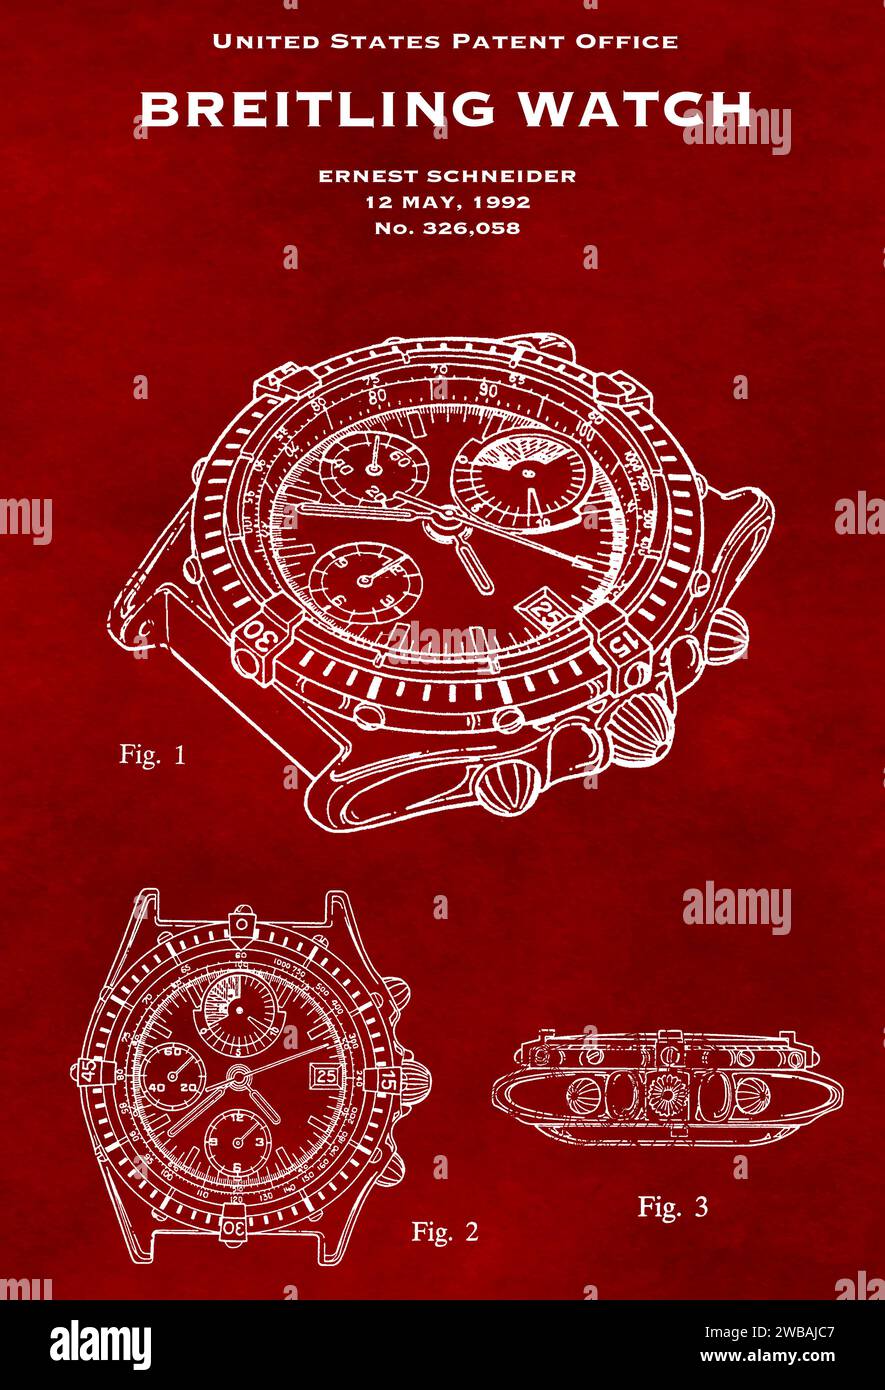 US-Patentamt Design von 1992 einer Breitling-Uhr auf rotem Hintergrund Stockfoto